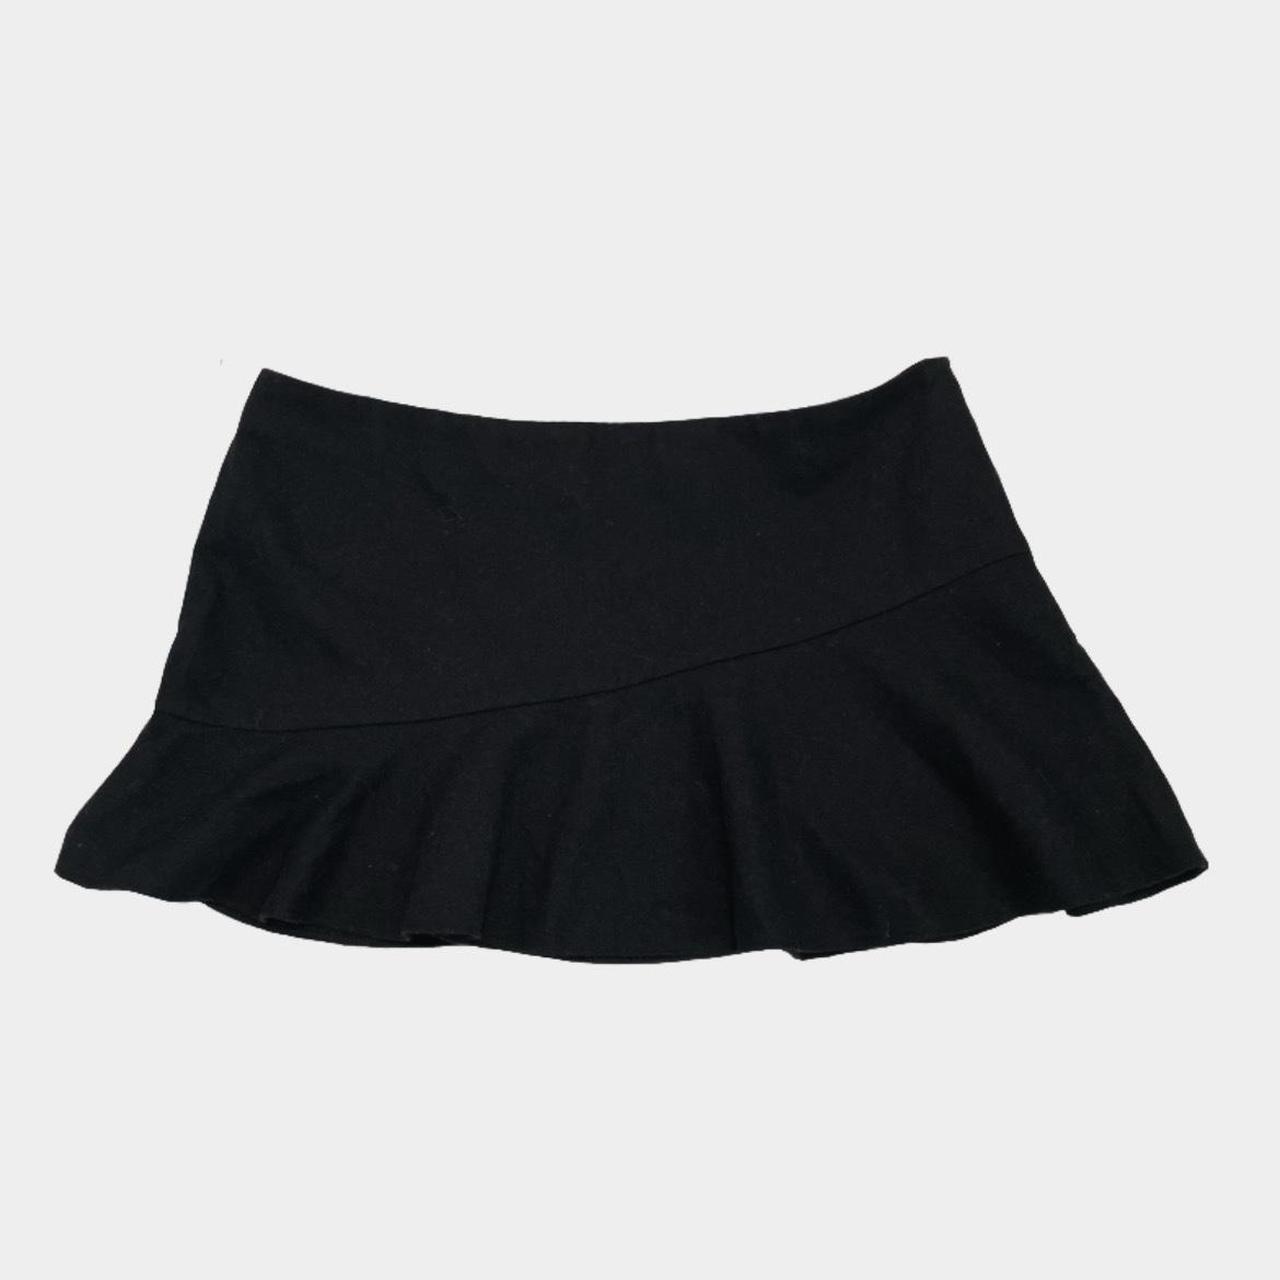 Topshop Women's Skirt | Depop